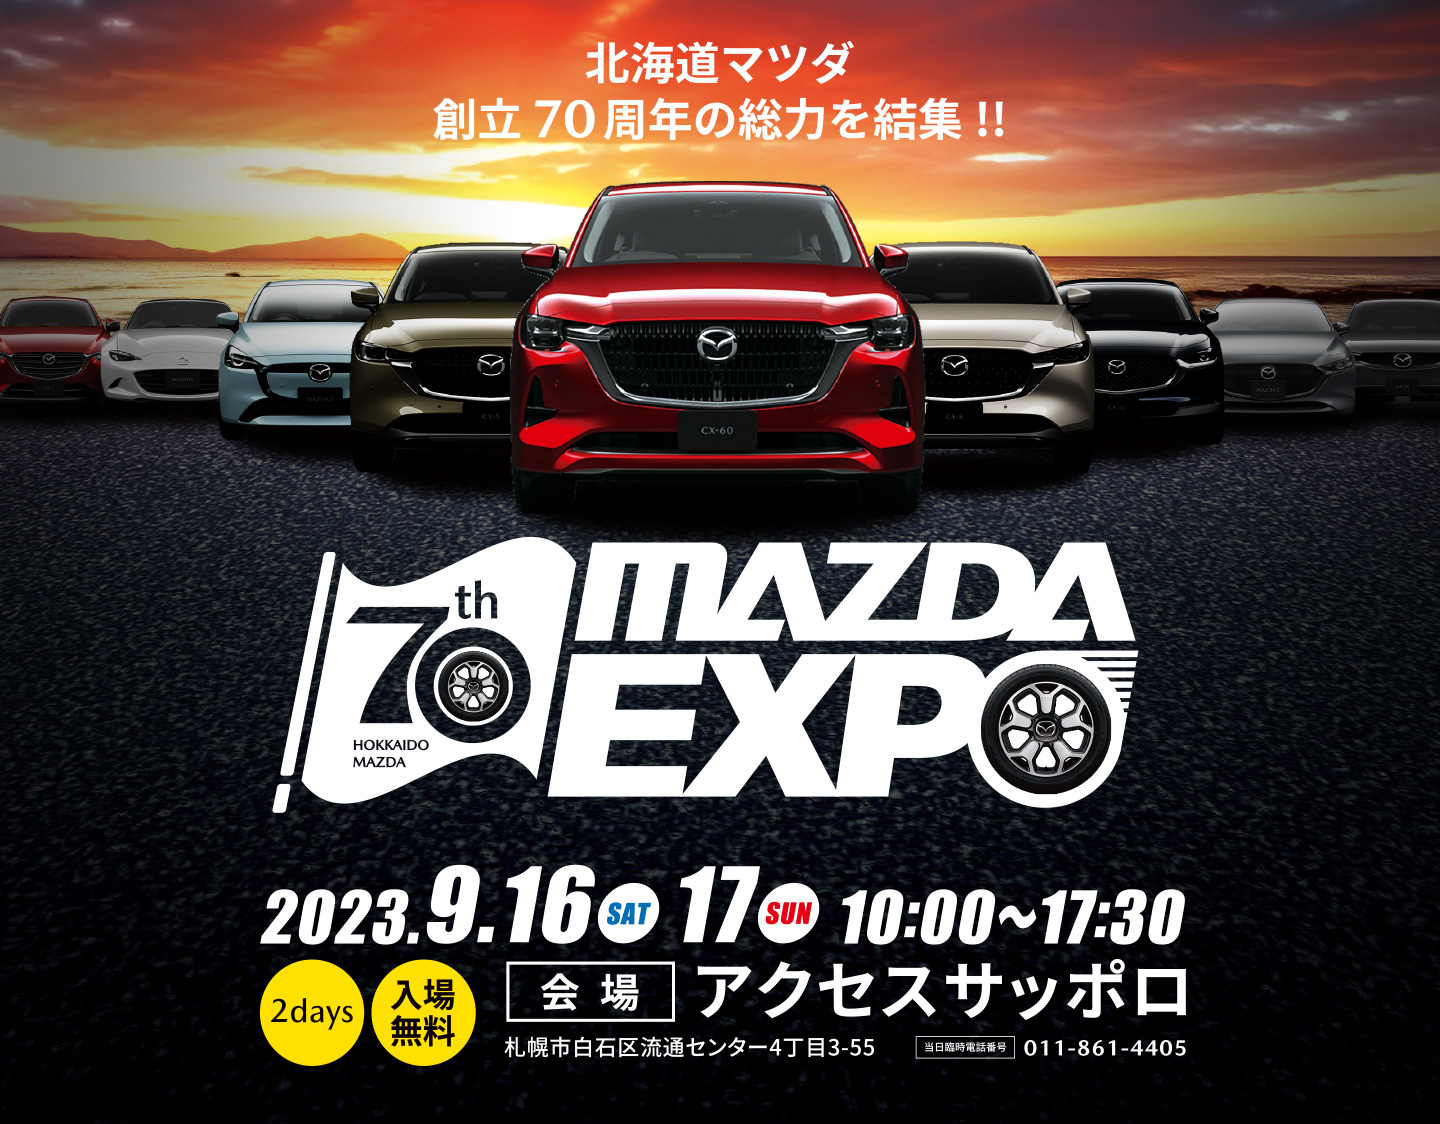 MAZDA EXPO